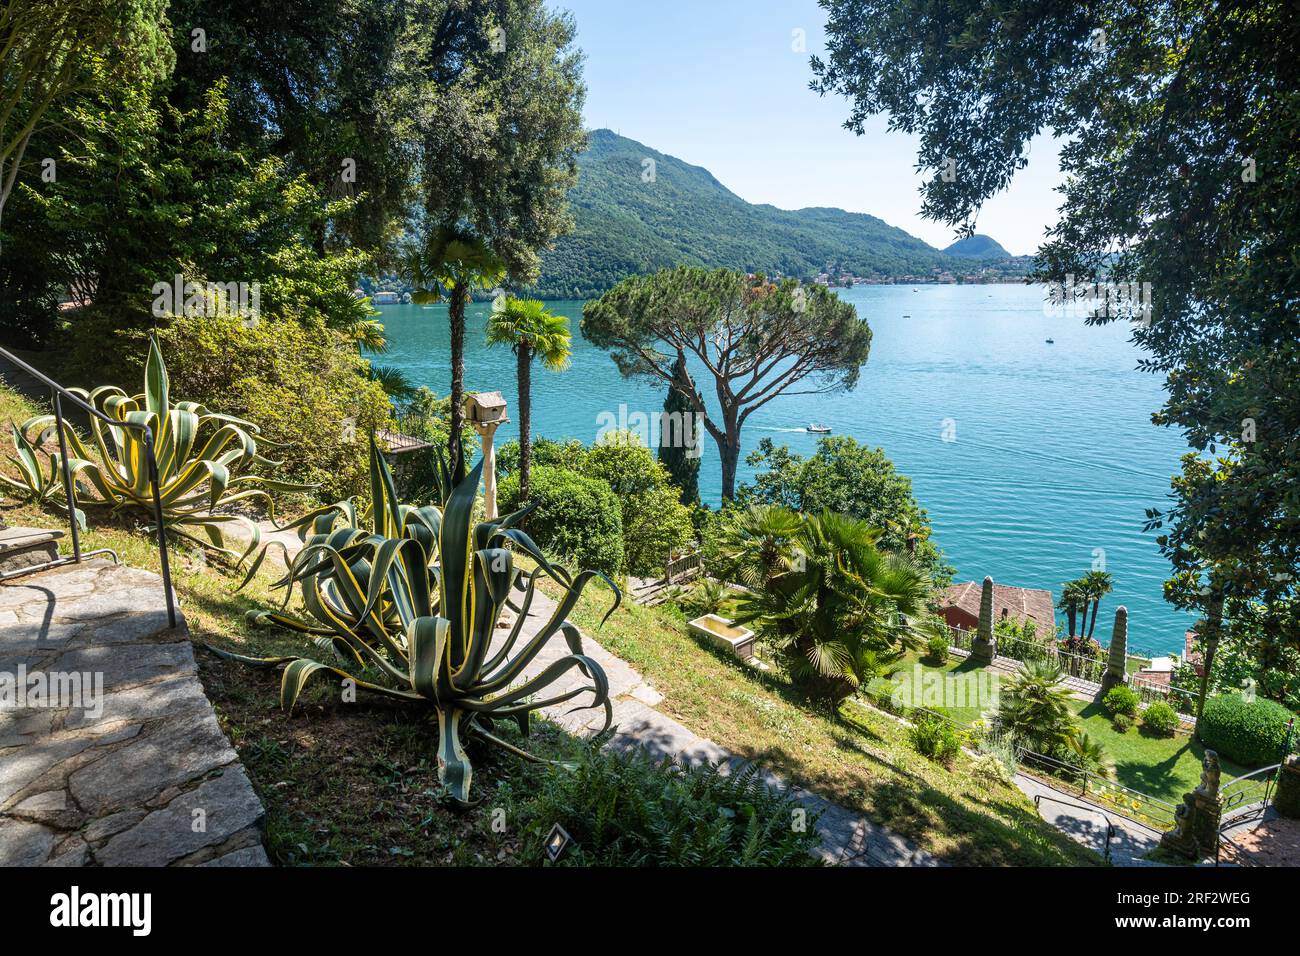 Le magnifique parc Scherrer à Morcote, plein de flore subtropicale exquise au bord du lac de Lugano, en Suisse Banque D'Images